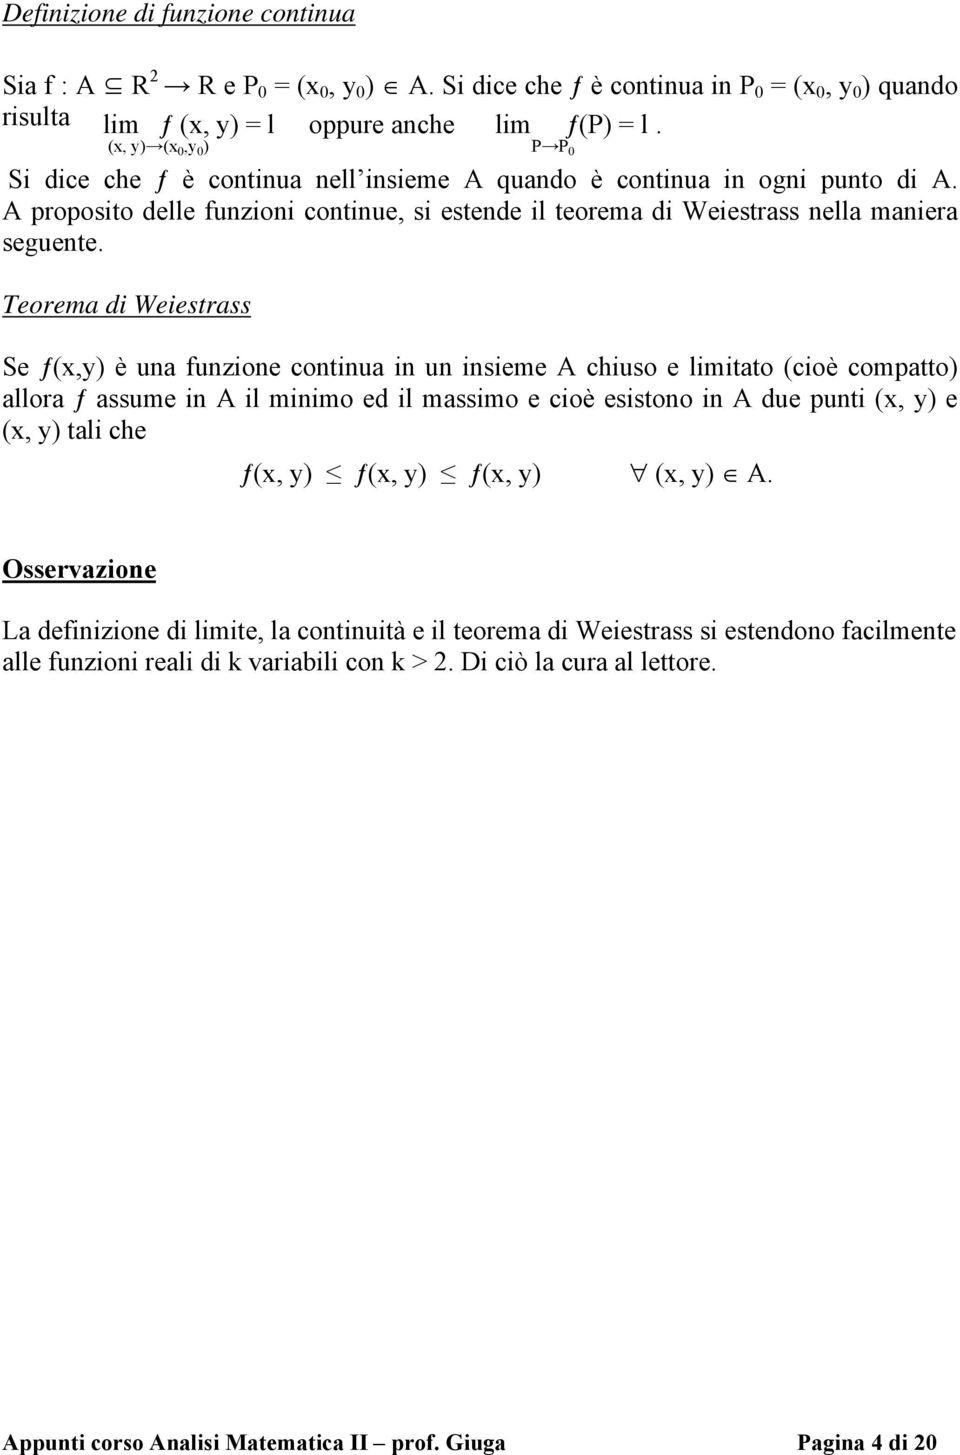 Teorema di Weiestrass Se ƒ(x,y) è una funzione continua in un insieme A chiuso e limitato (cioè compatto) allora ƒ assume in A il minimo ed il massimo e cioè esistono in A due punti (x, y) e (x, y)